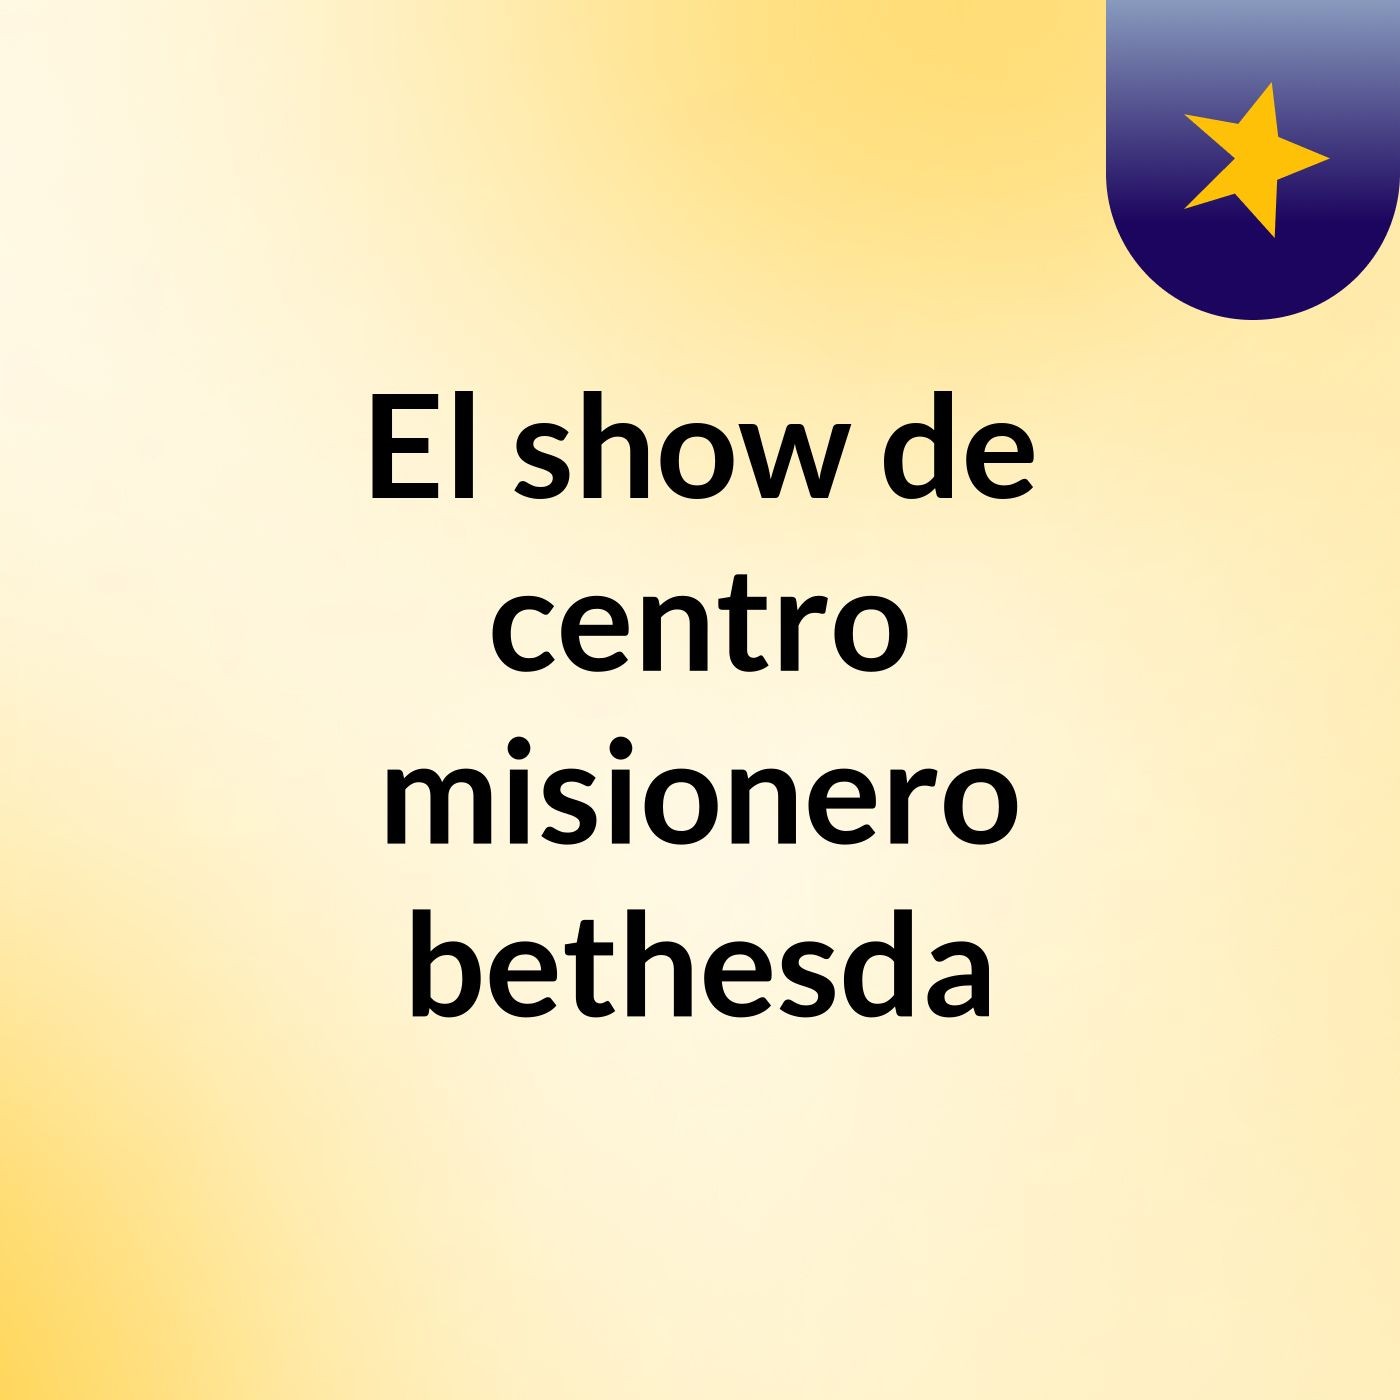 El show de centro misionero bethesda